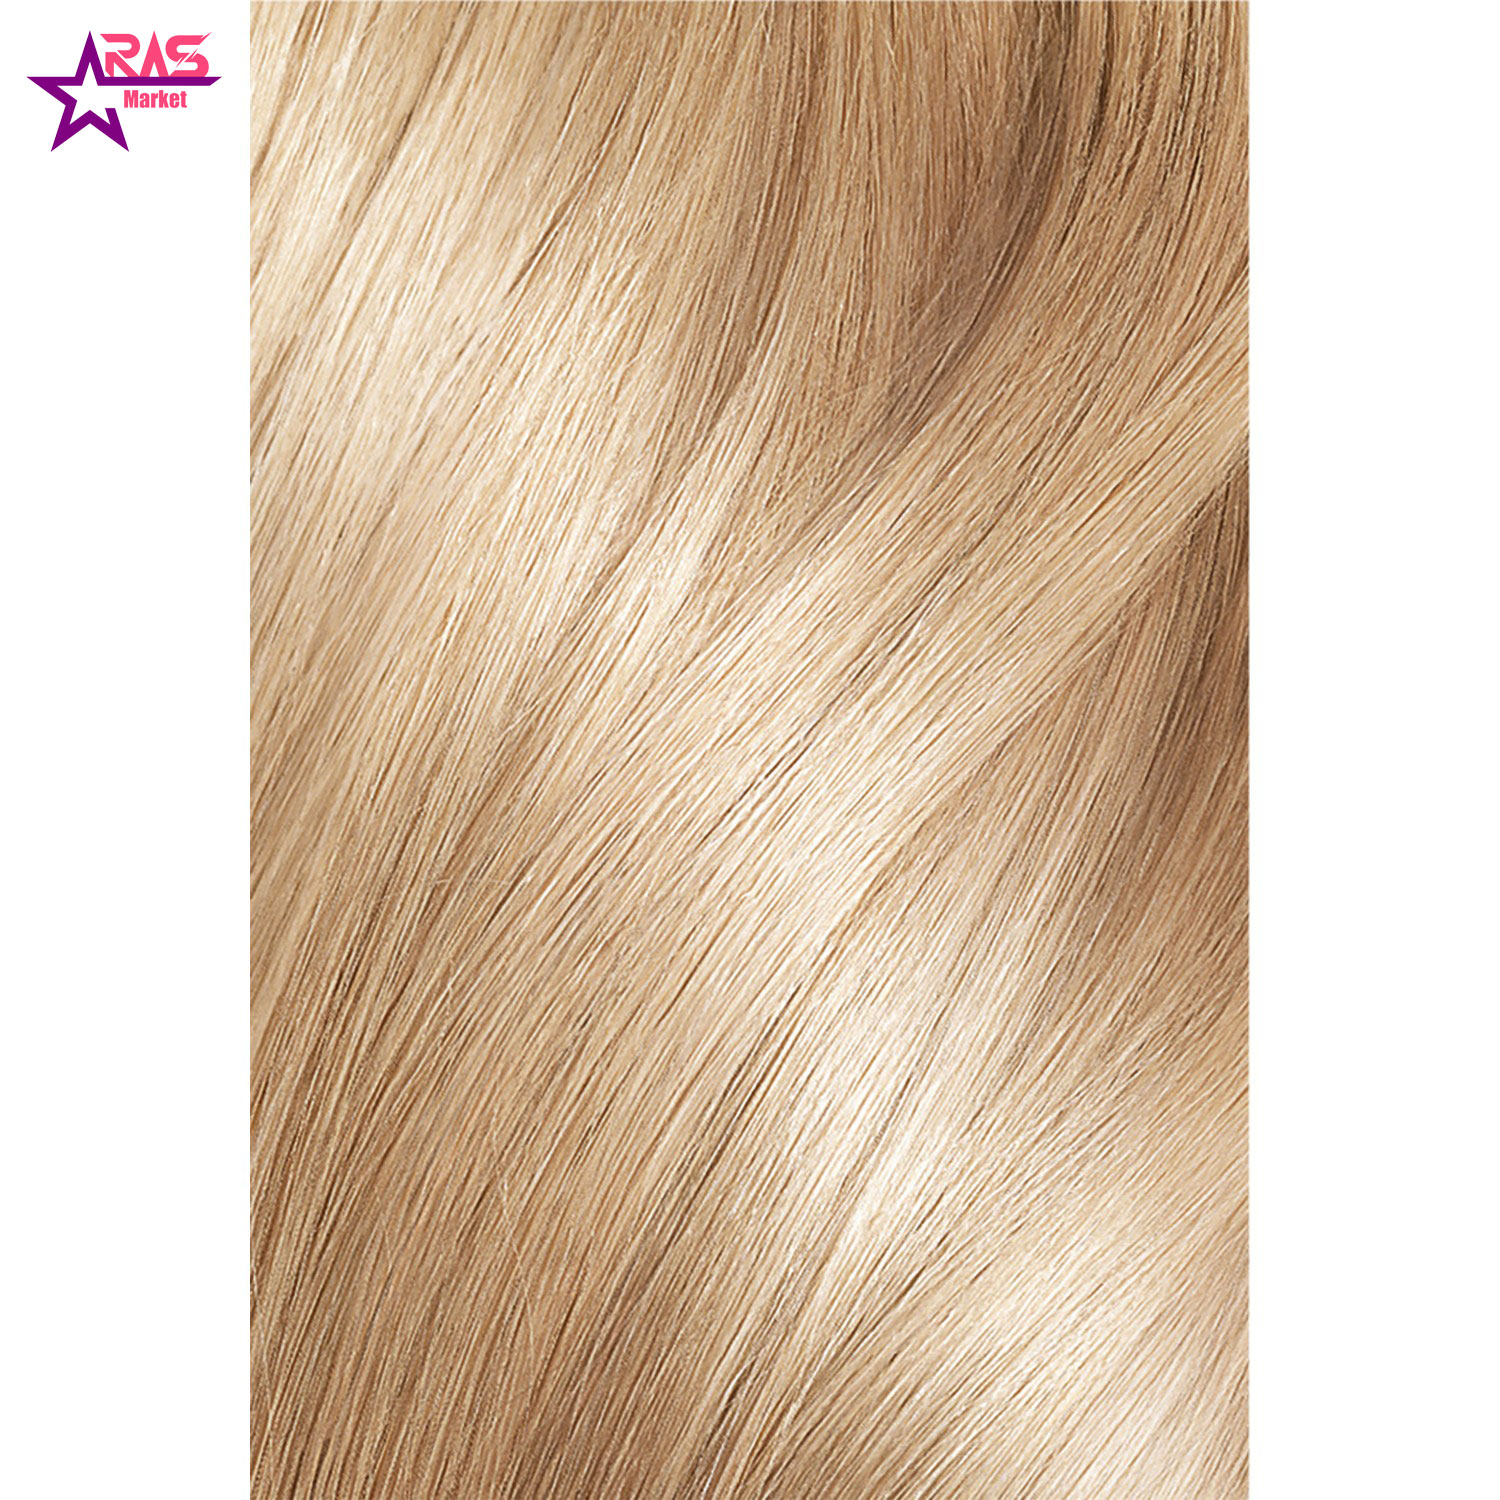 کیت رنگ مو لورآل سری Excellence شماره 9.1 ، فروشگاه اینترنتی ارس مارکت ، بهداشت بانوان ، رنگ مو loreal paris